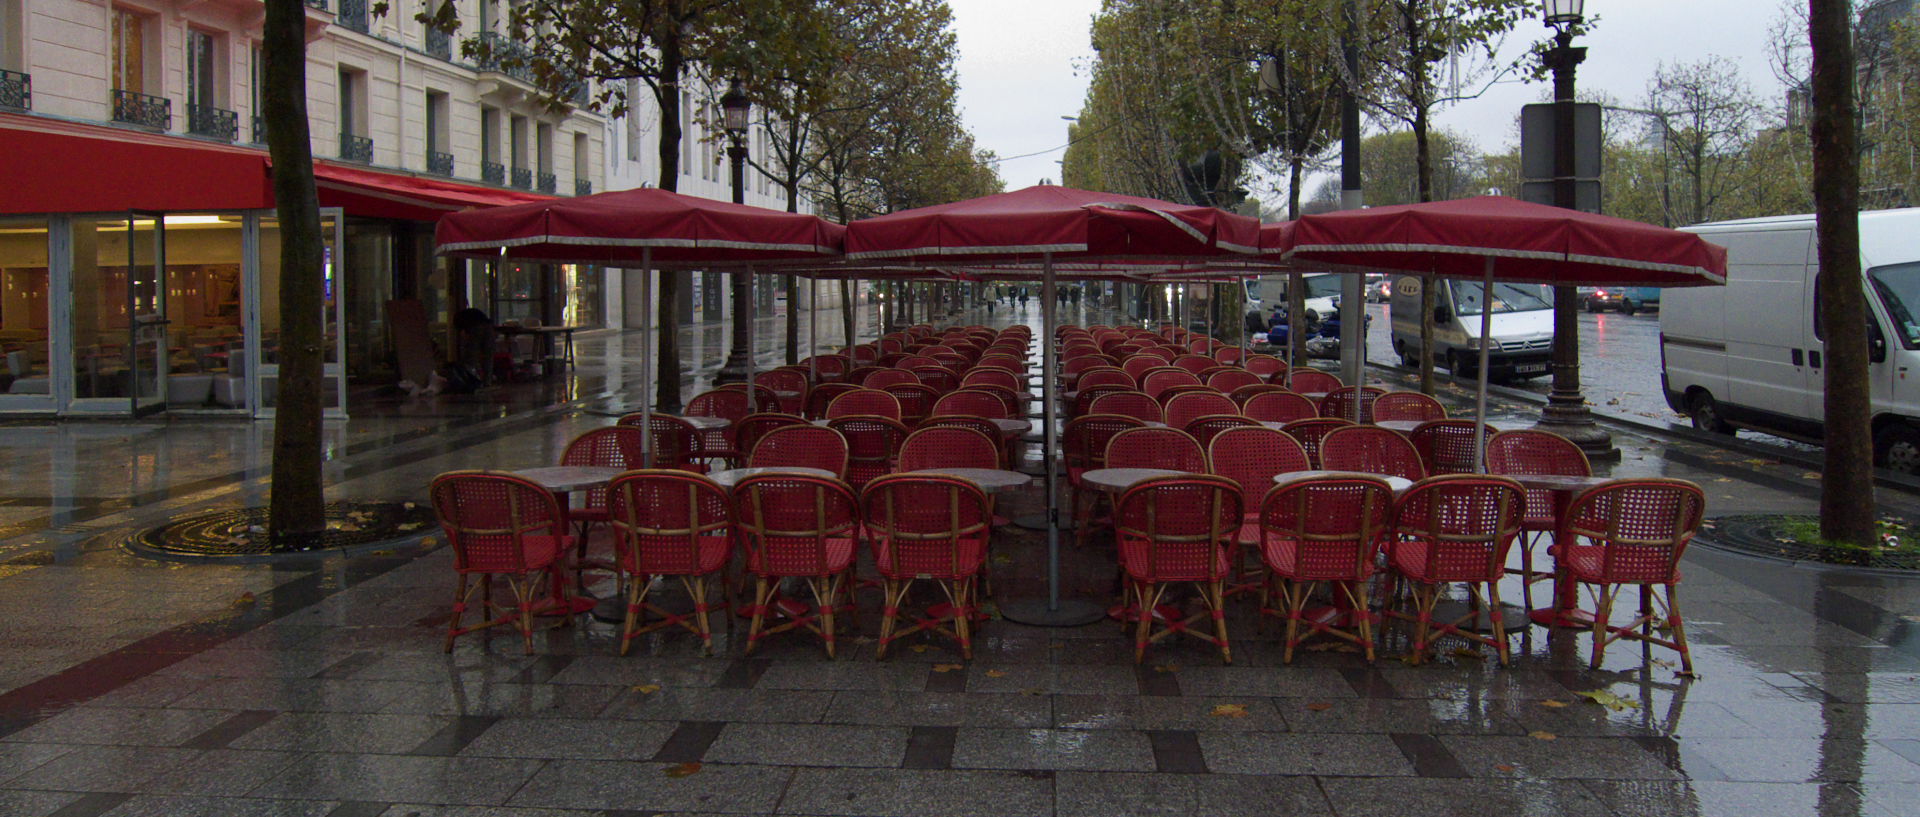 Mercredi 5 novembre 2008 (2), av. des Champs-Elysées, à Paris.